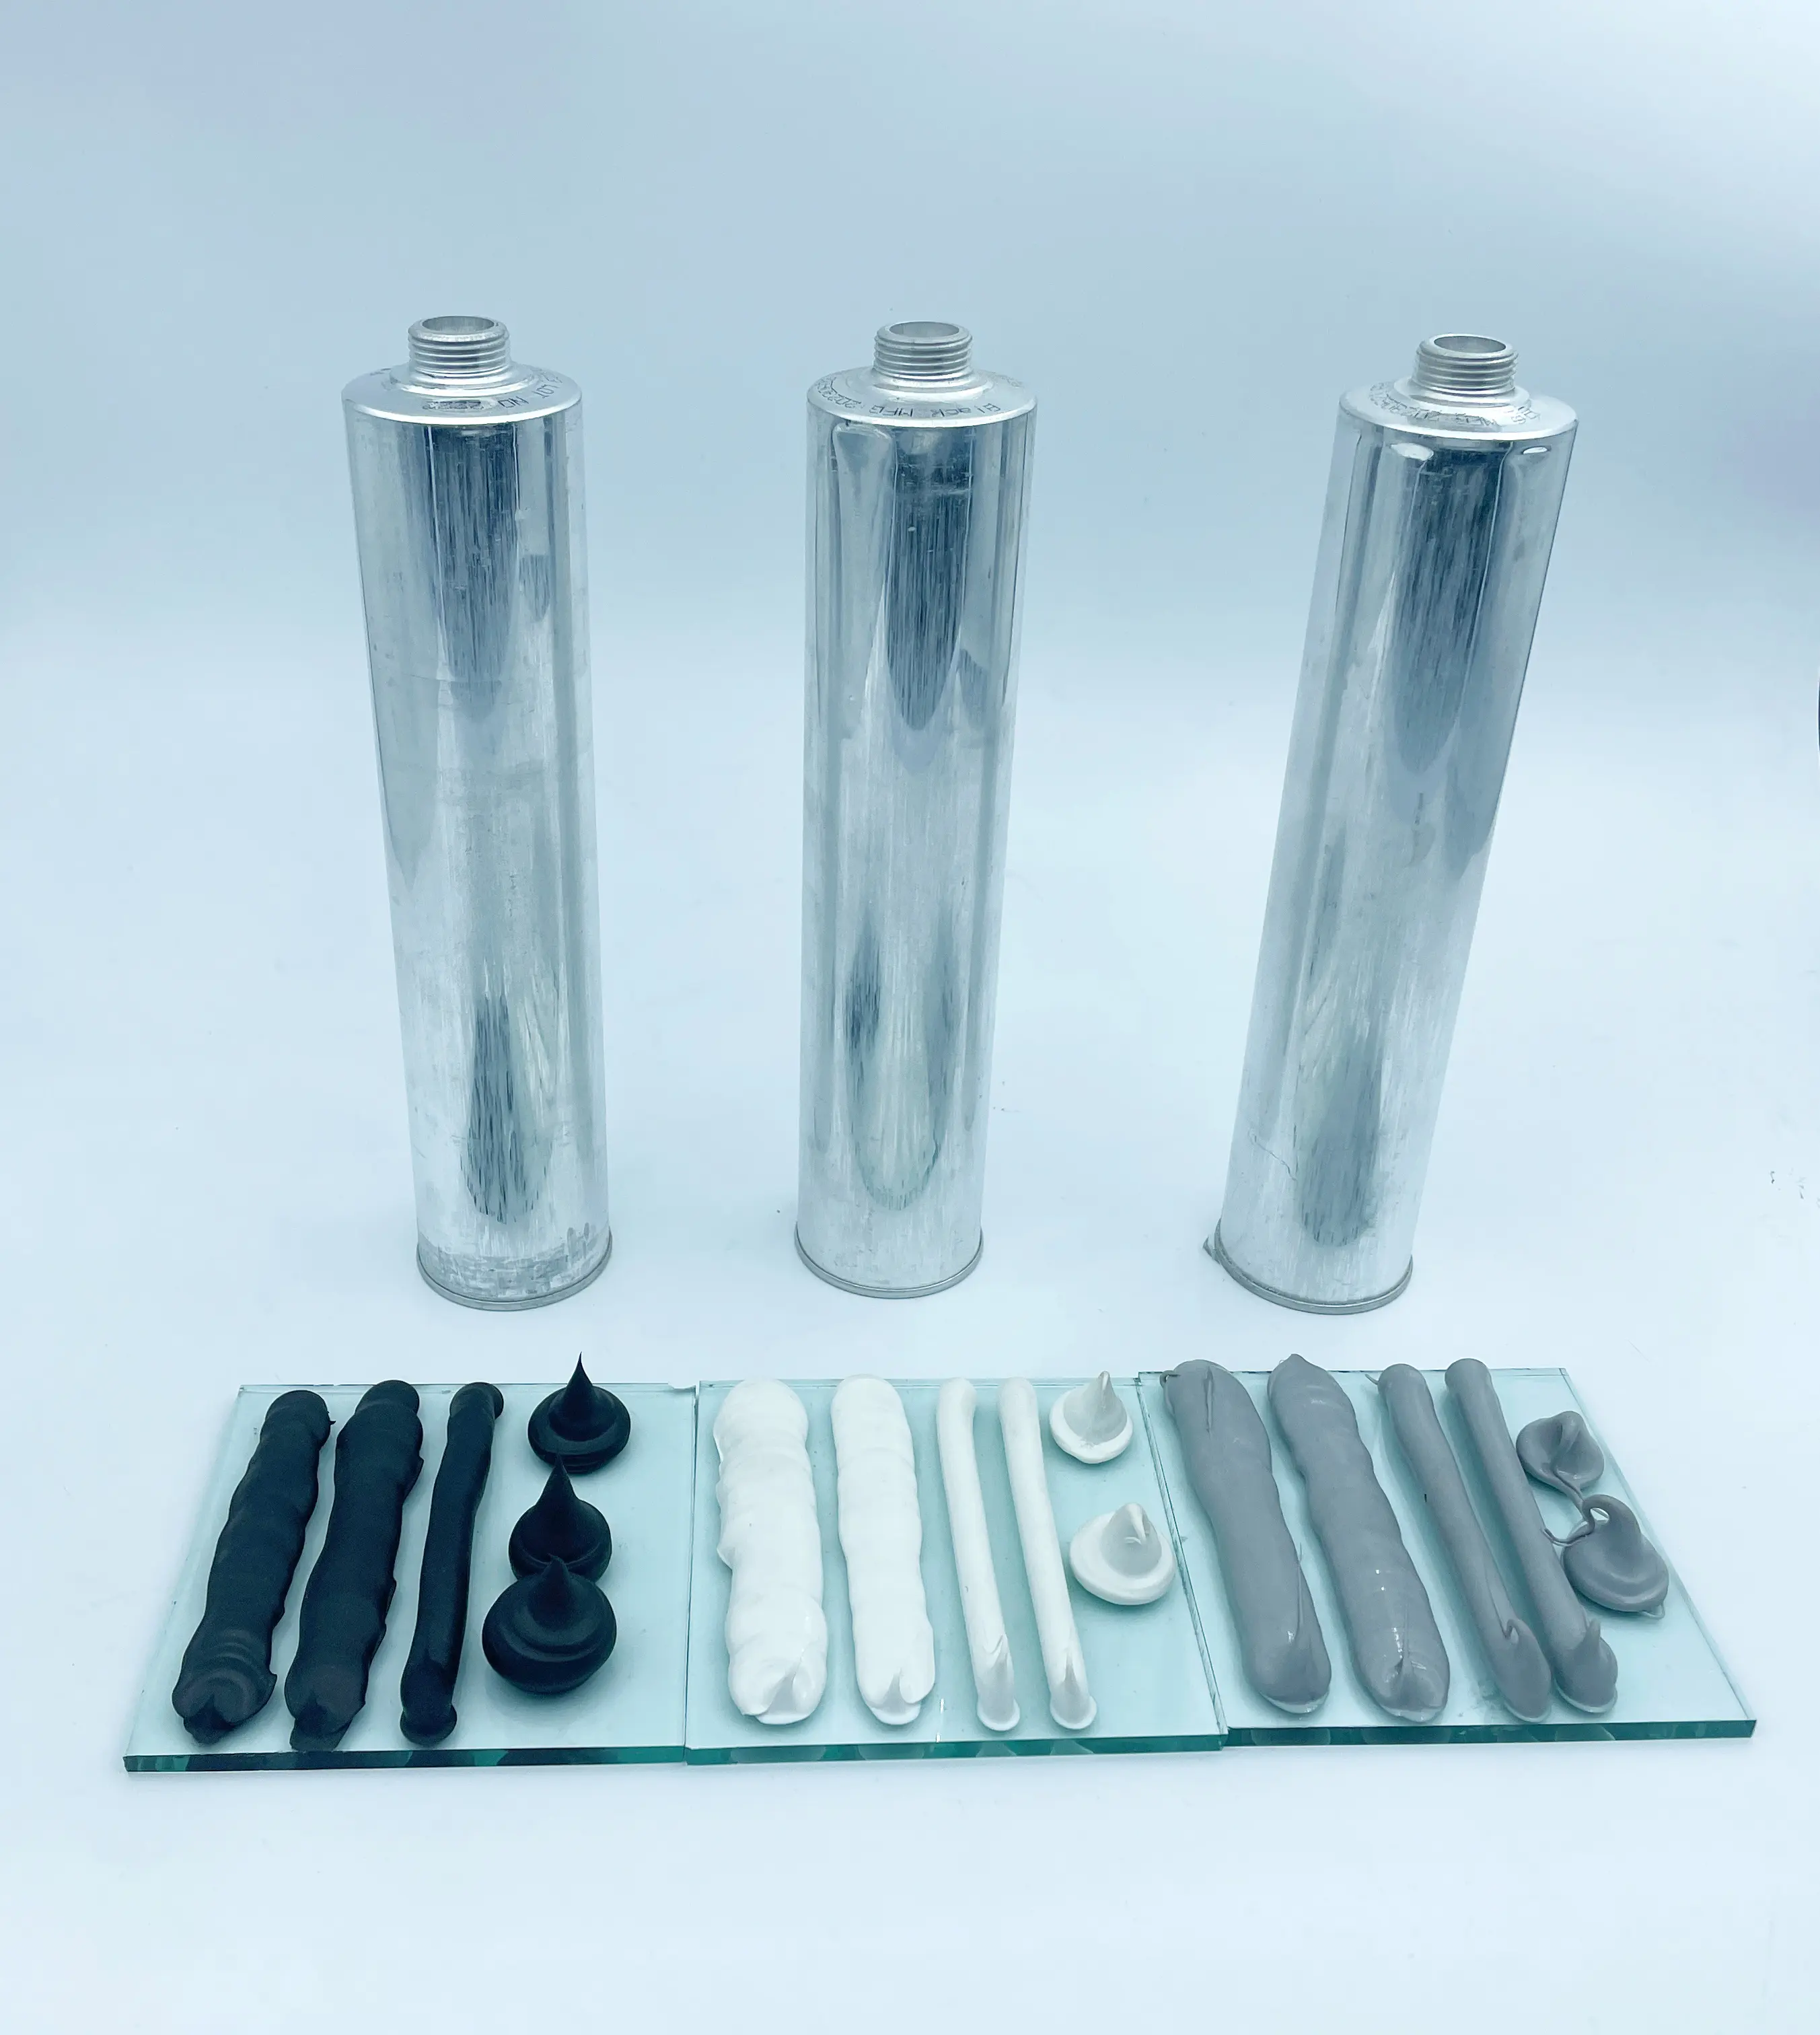 Komponen tunggal poliuretan sealant untuk lembar logam perekat logam otomotif perekat belakang kaca depan